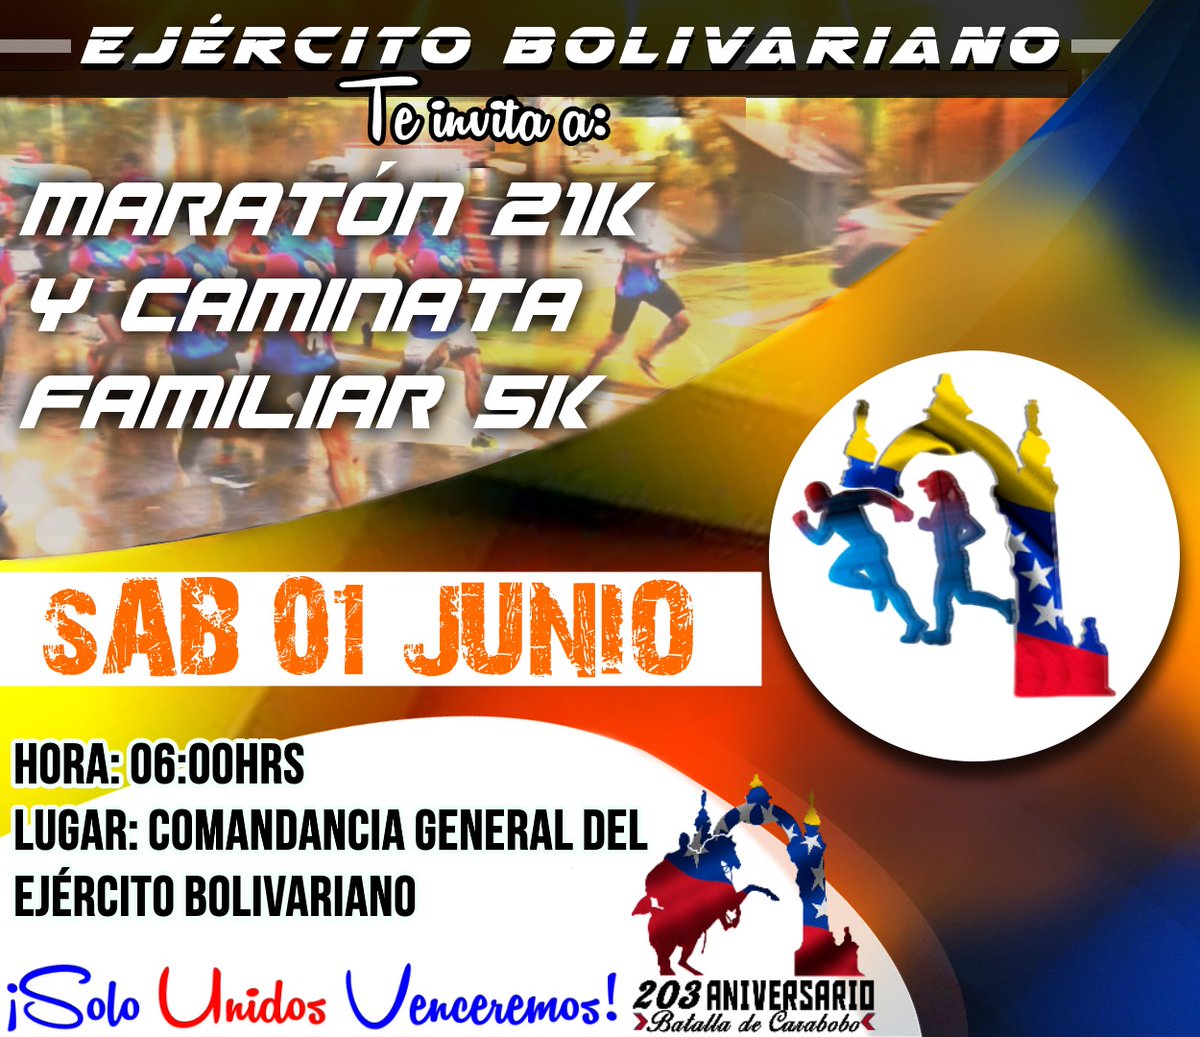 🏃#Invitación || ¡Atención corredores y familias! Mañana 1 de junio, únete al maratón 21k y caminata familiar 5k en la Comandancia General del Ejército Bolivariano a las 6 am. Celebremos juntos en unión cívico y militar el 203 aniversario de la Batalla de Carabobo, Día del